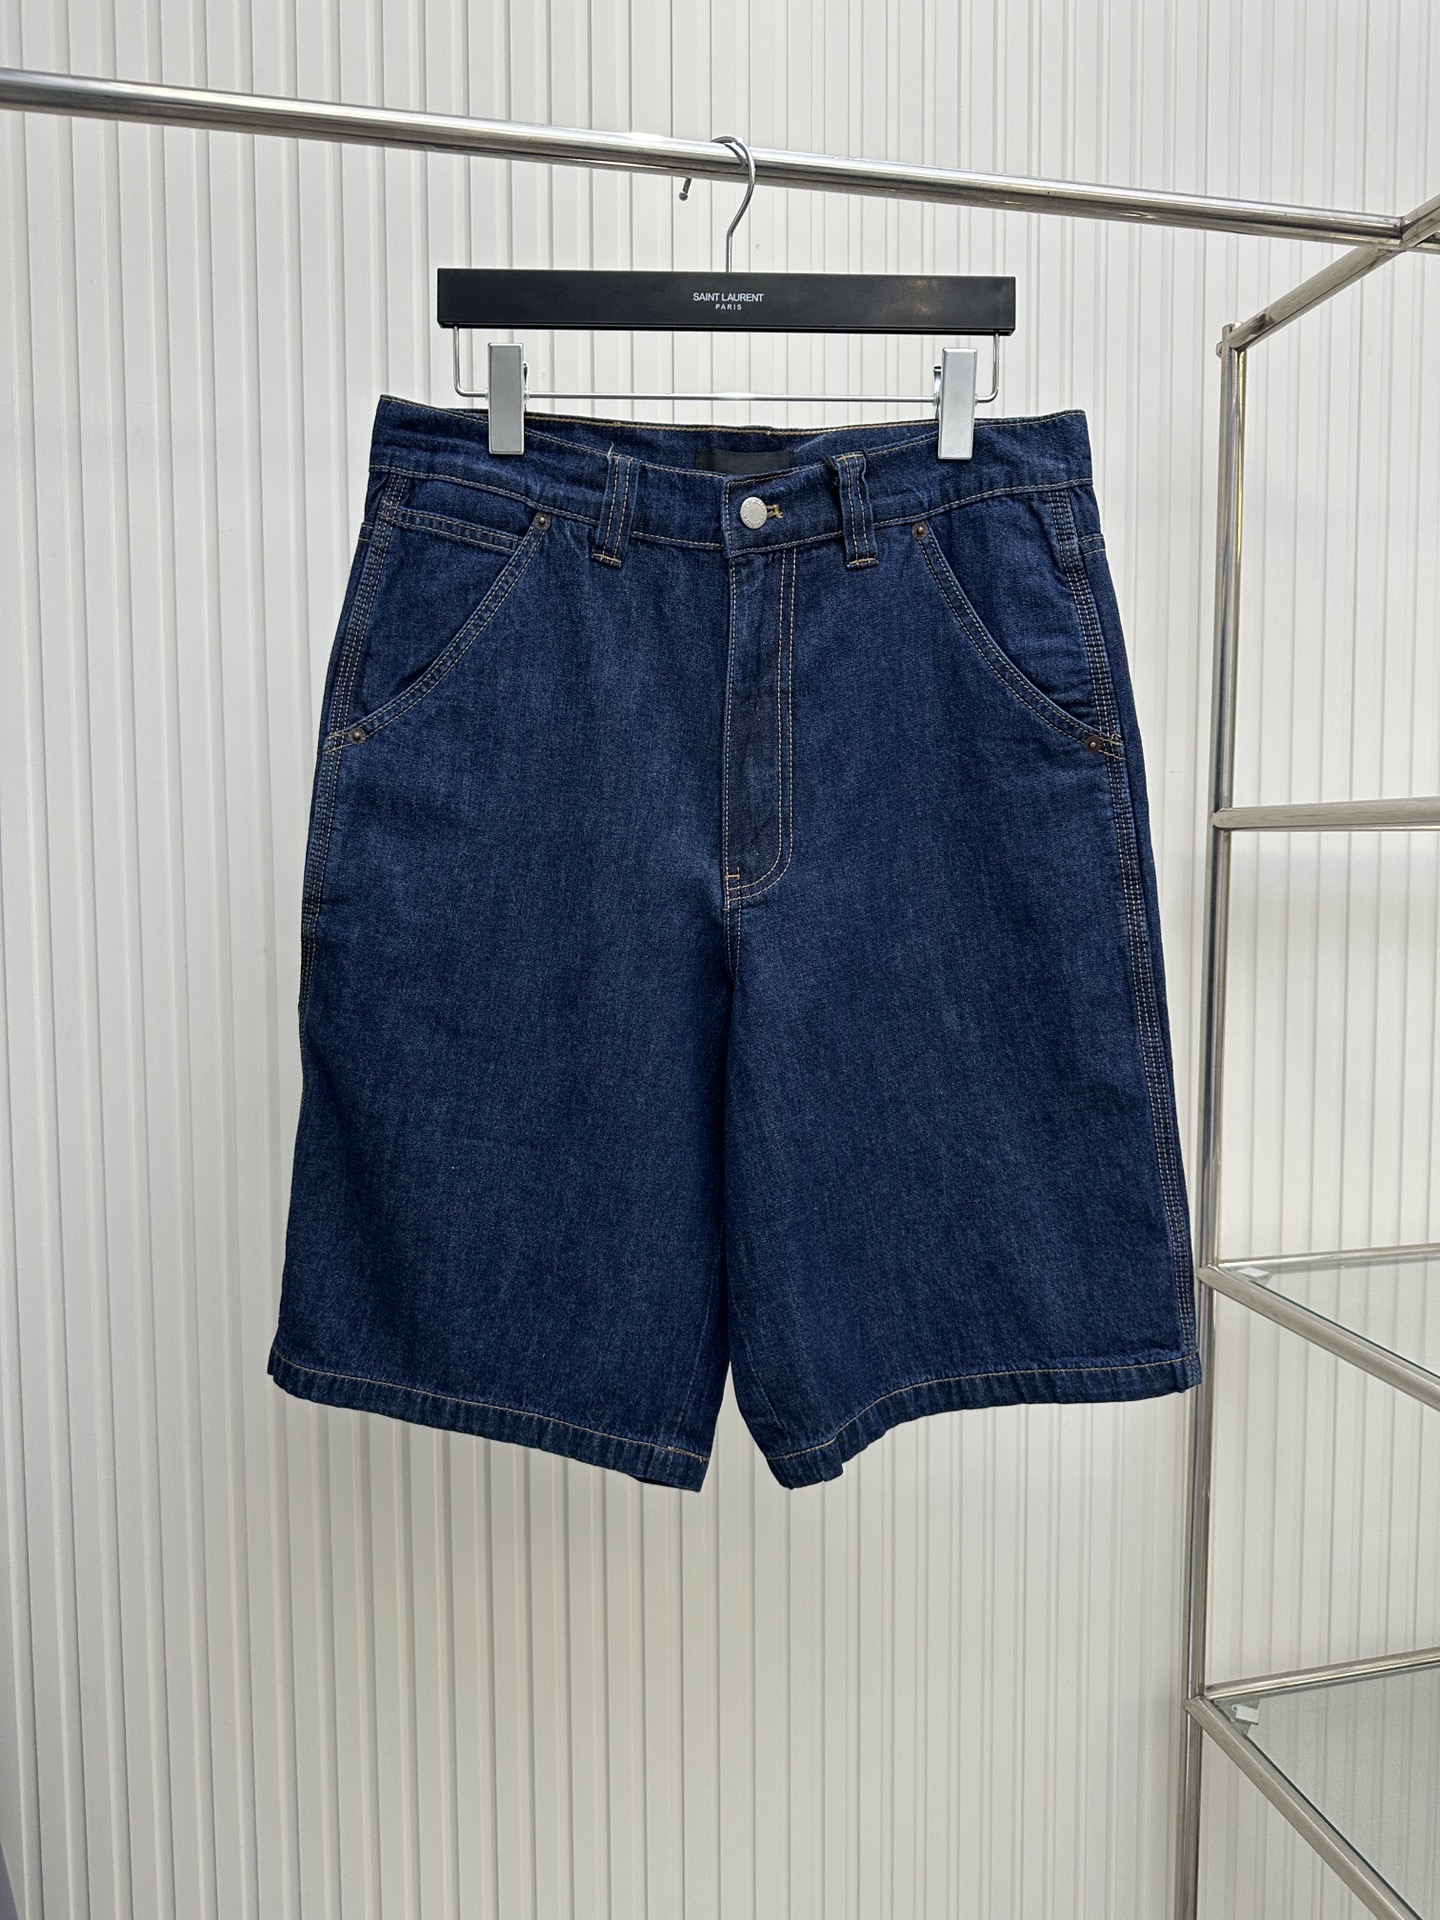 Prada Clothing Shorts Blue Denim